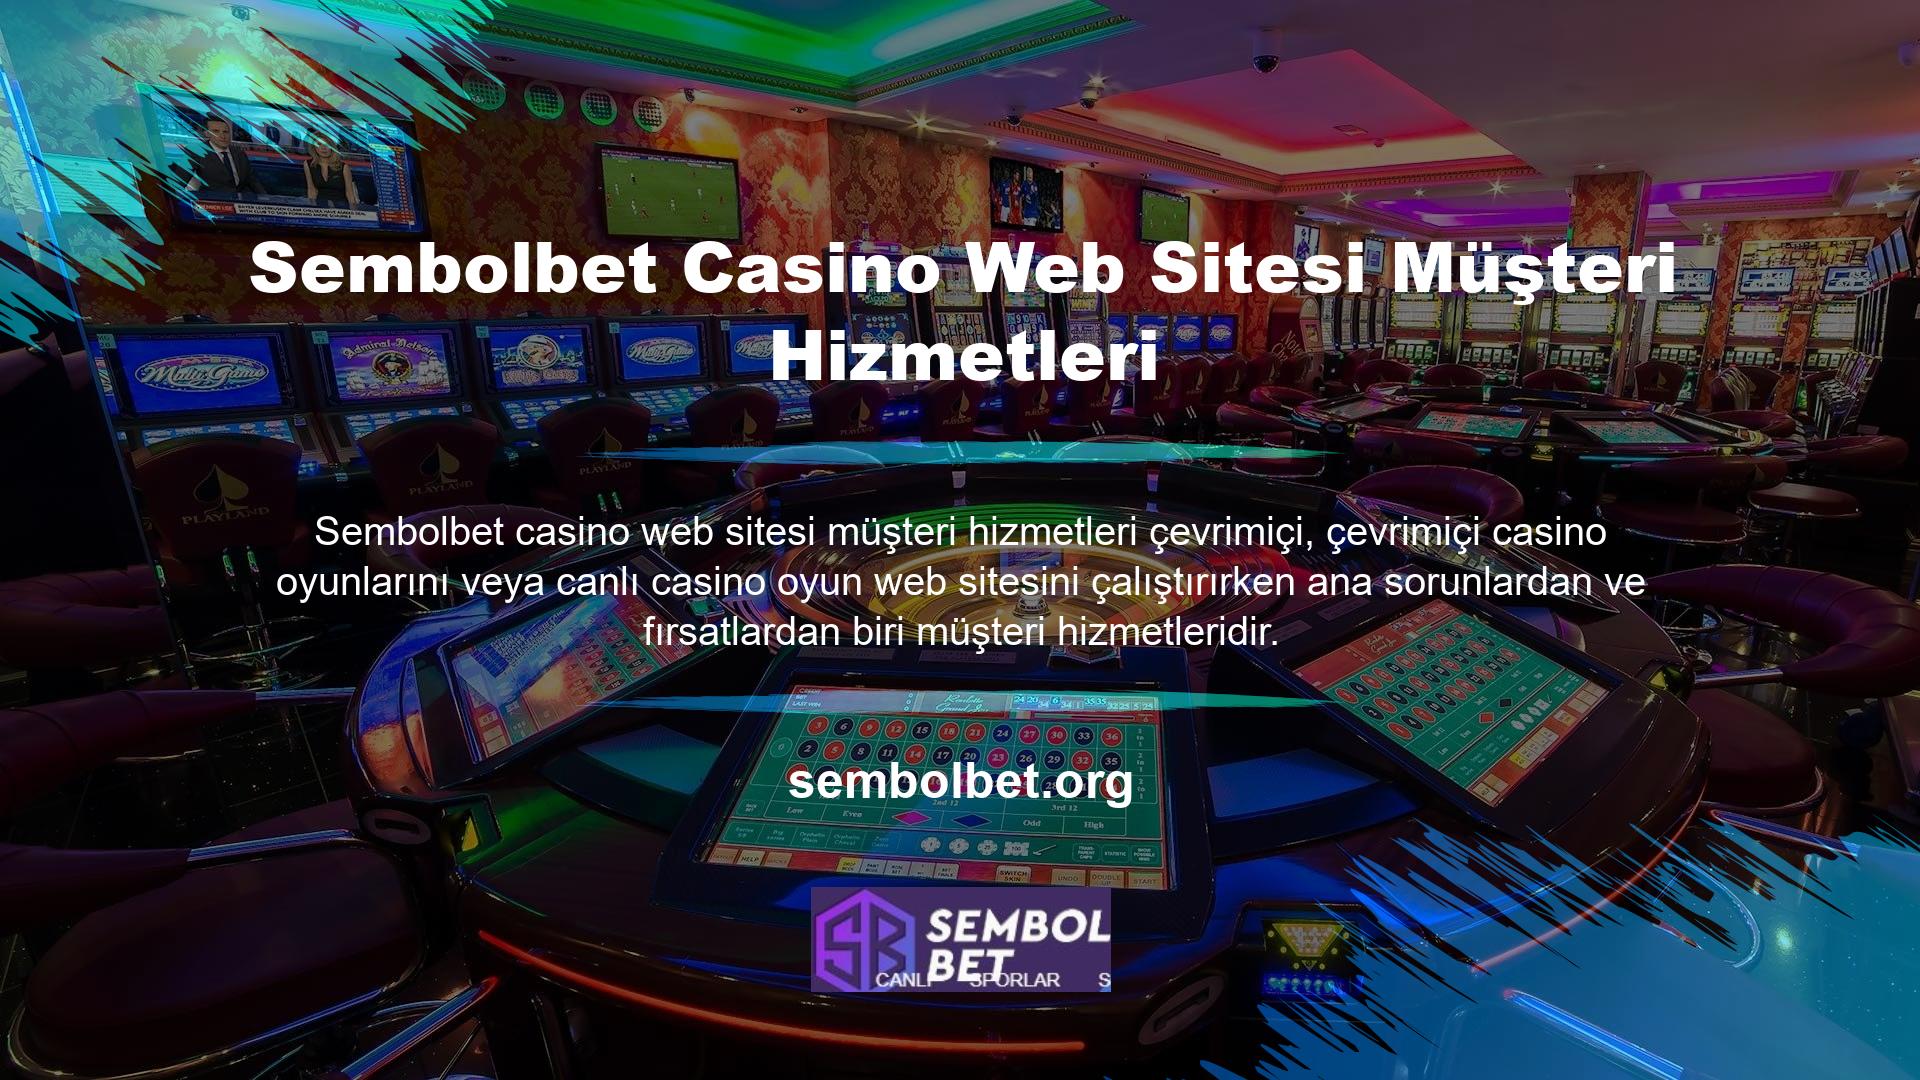 Çevrimiçi casino siteleri, üyelerine genellikle doğrudan desteği de içeren "müşteri hizmetleri" adı altında hizmet vermektedir